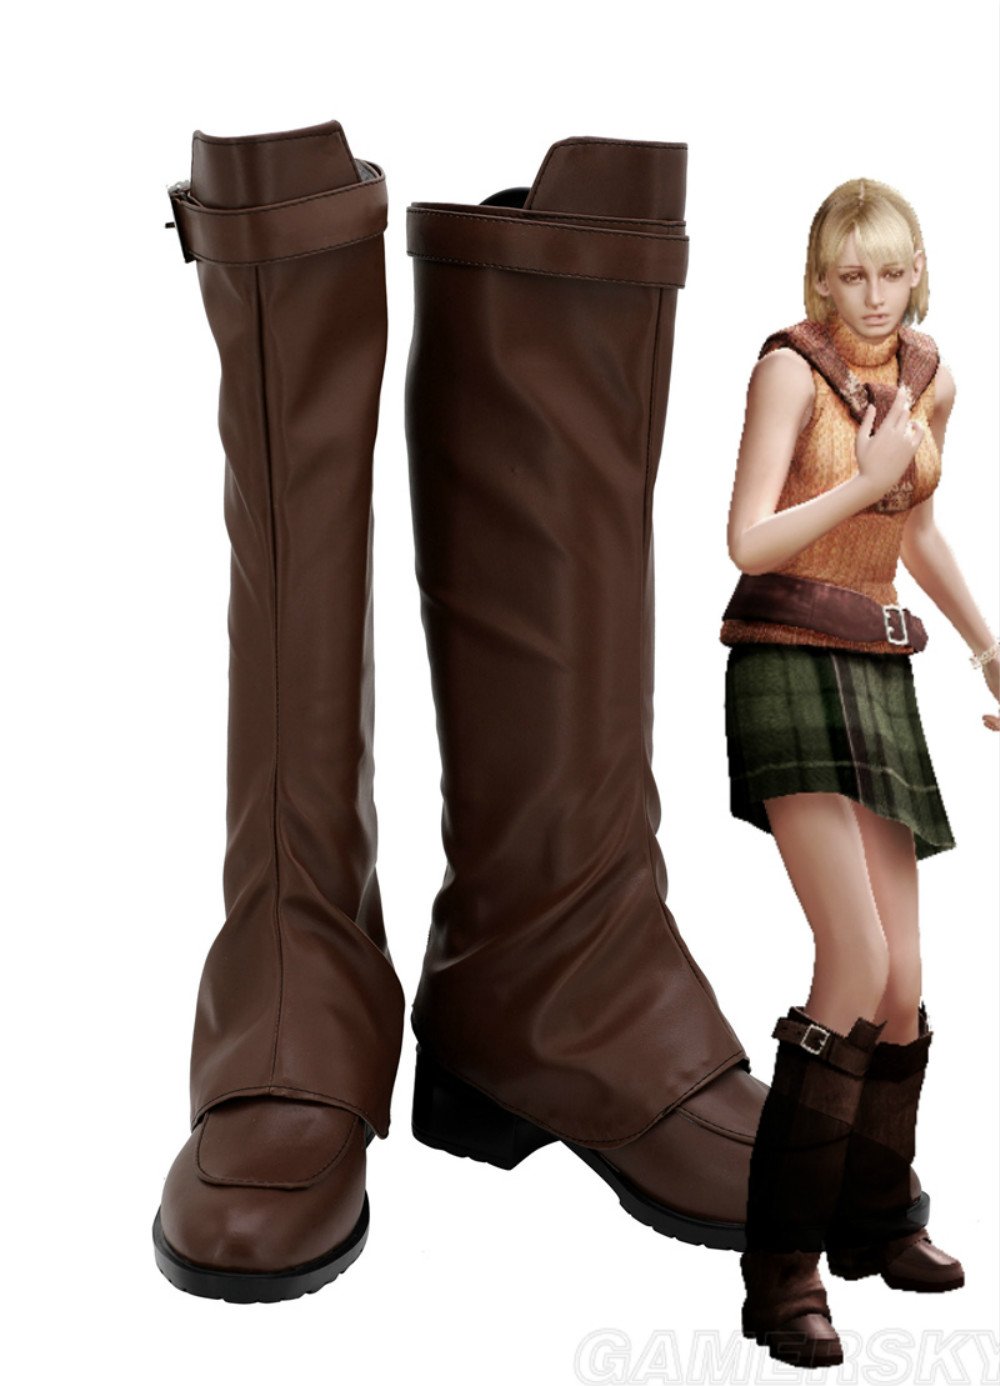 Ashley Graham Resident Evil 4 Ashley Stiefel Cosplay Schuhe